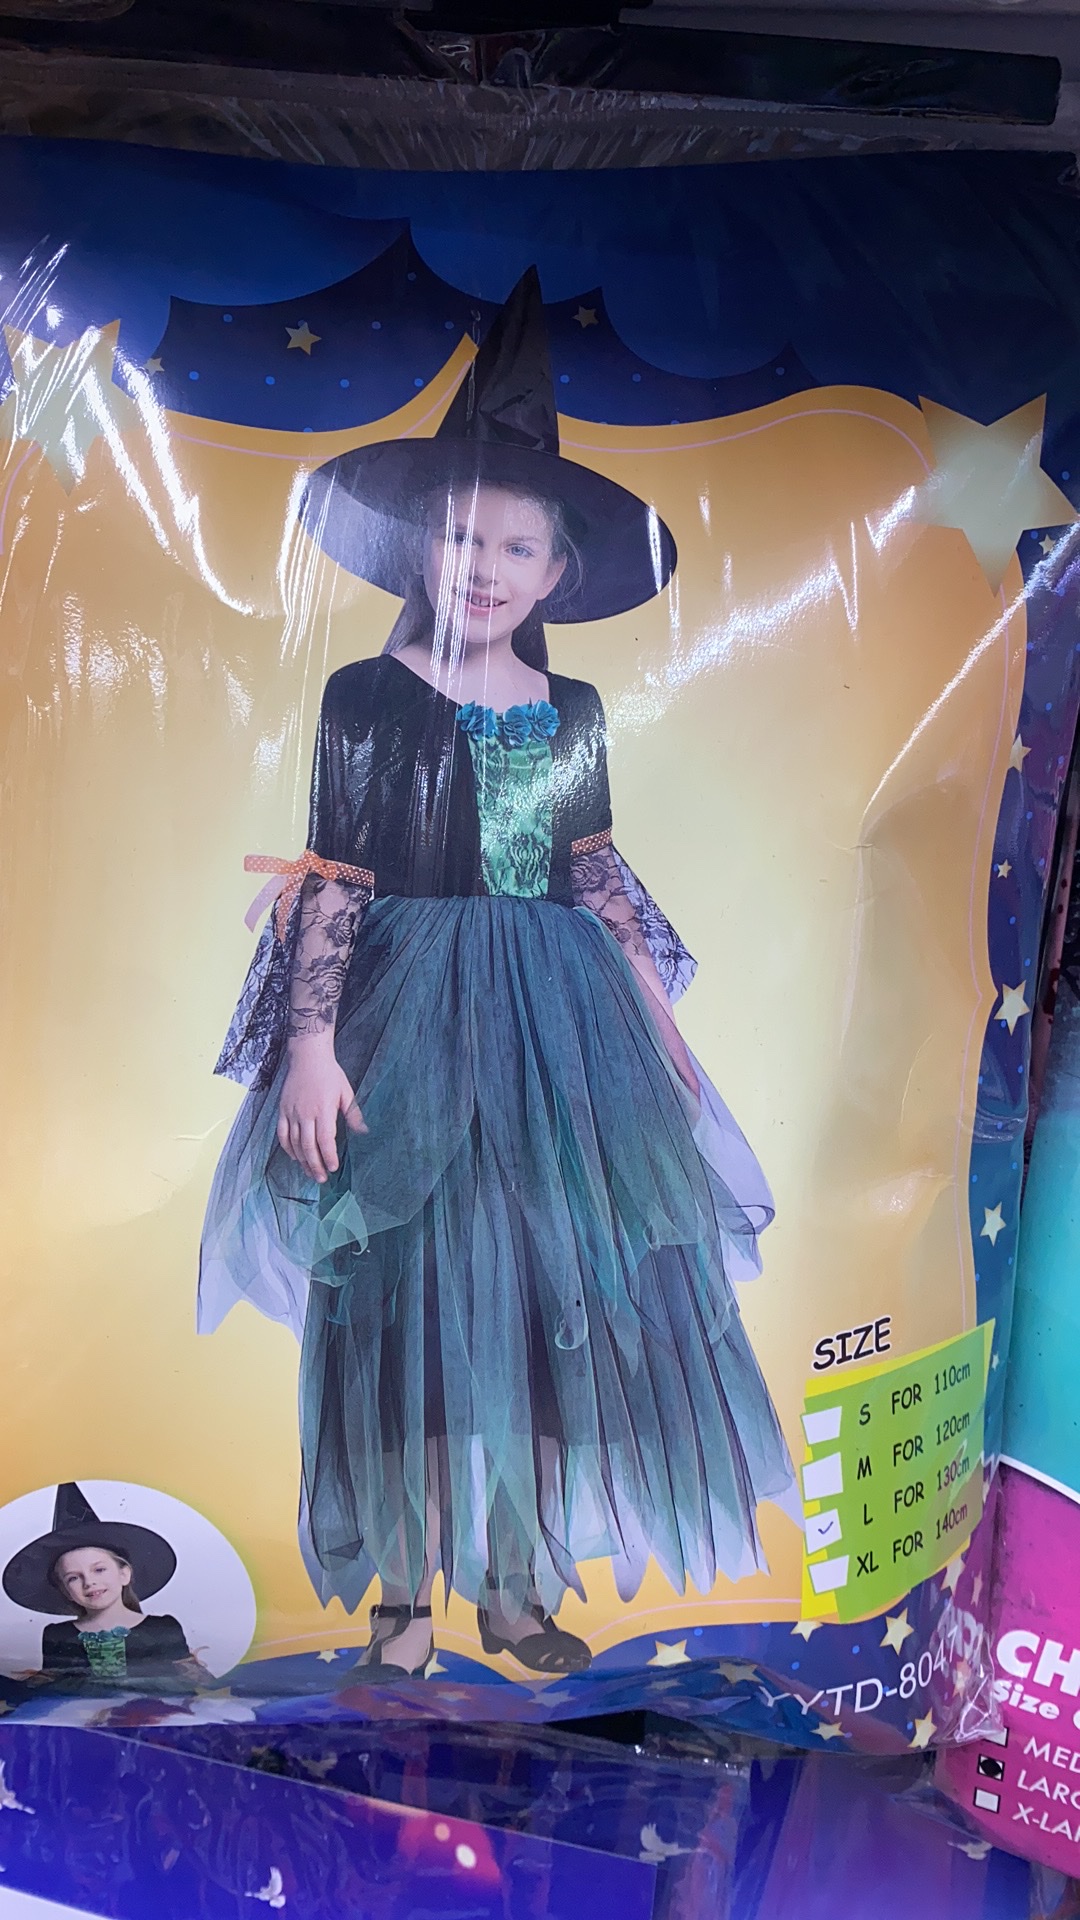 狂欢节日用品 舞台装巫婆装扮服